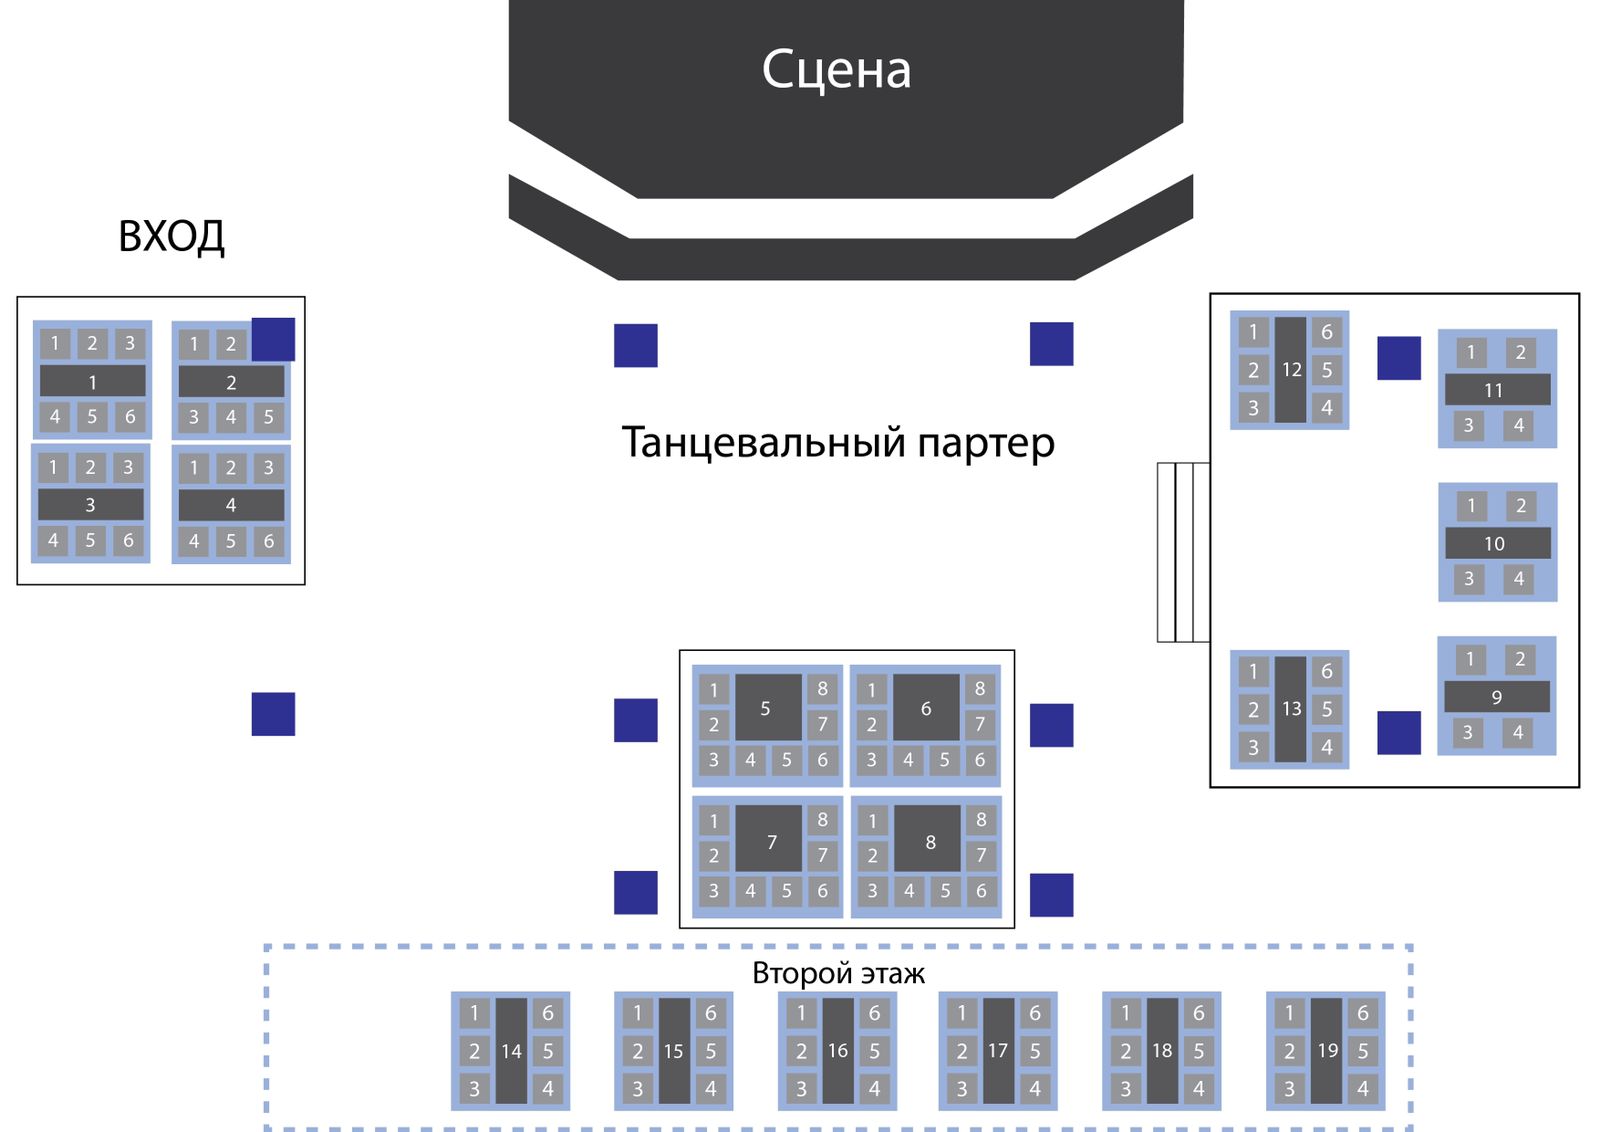 Схема зала для Егор Шип